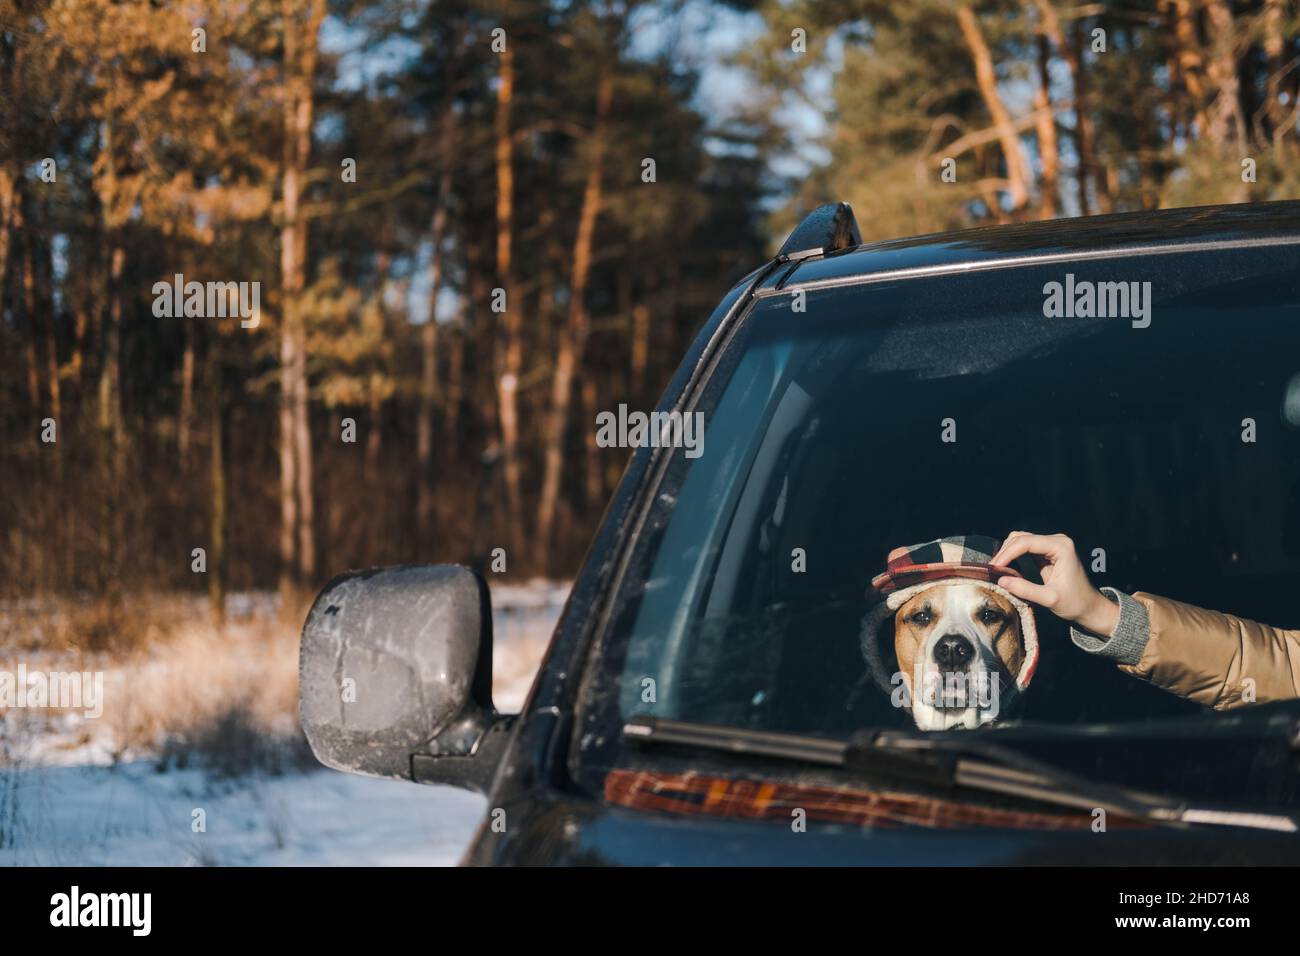 Divertente staffordshire terrier seduto in un'auto, mano umana raddrizzando il suo cappello invernale. Stile di vita invernale attivo con cani, guida con animali domestici nella natura Foto Stock